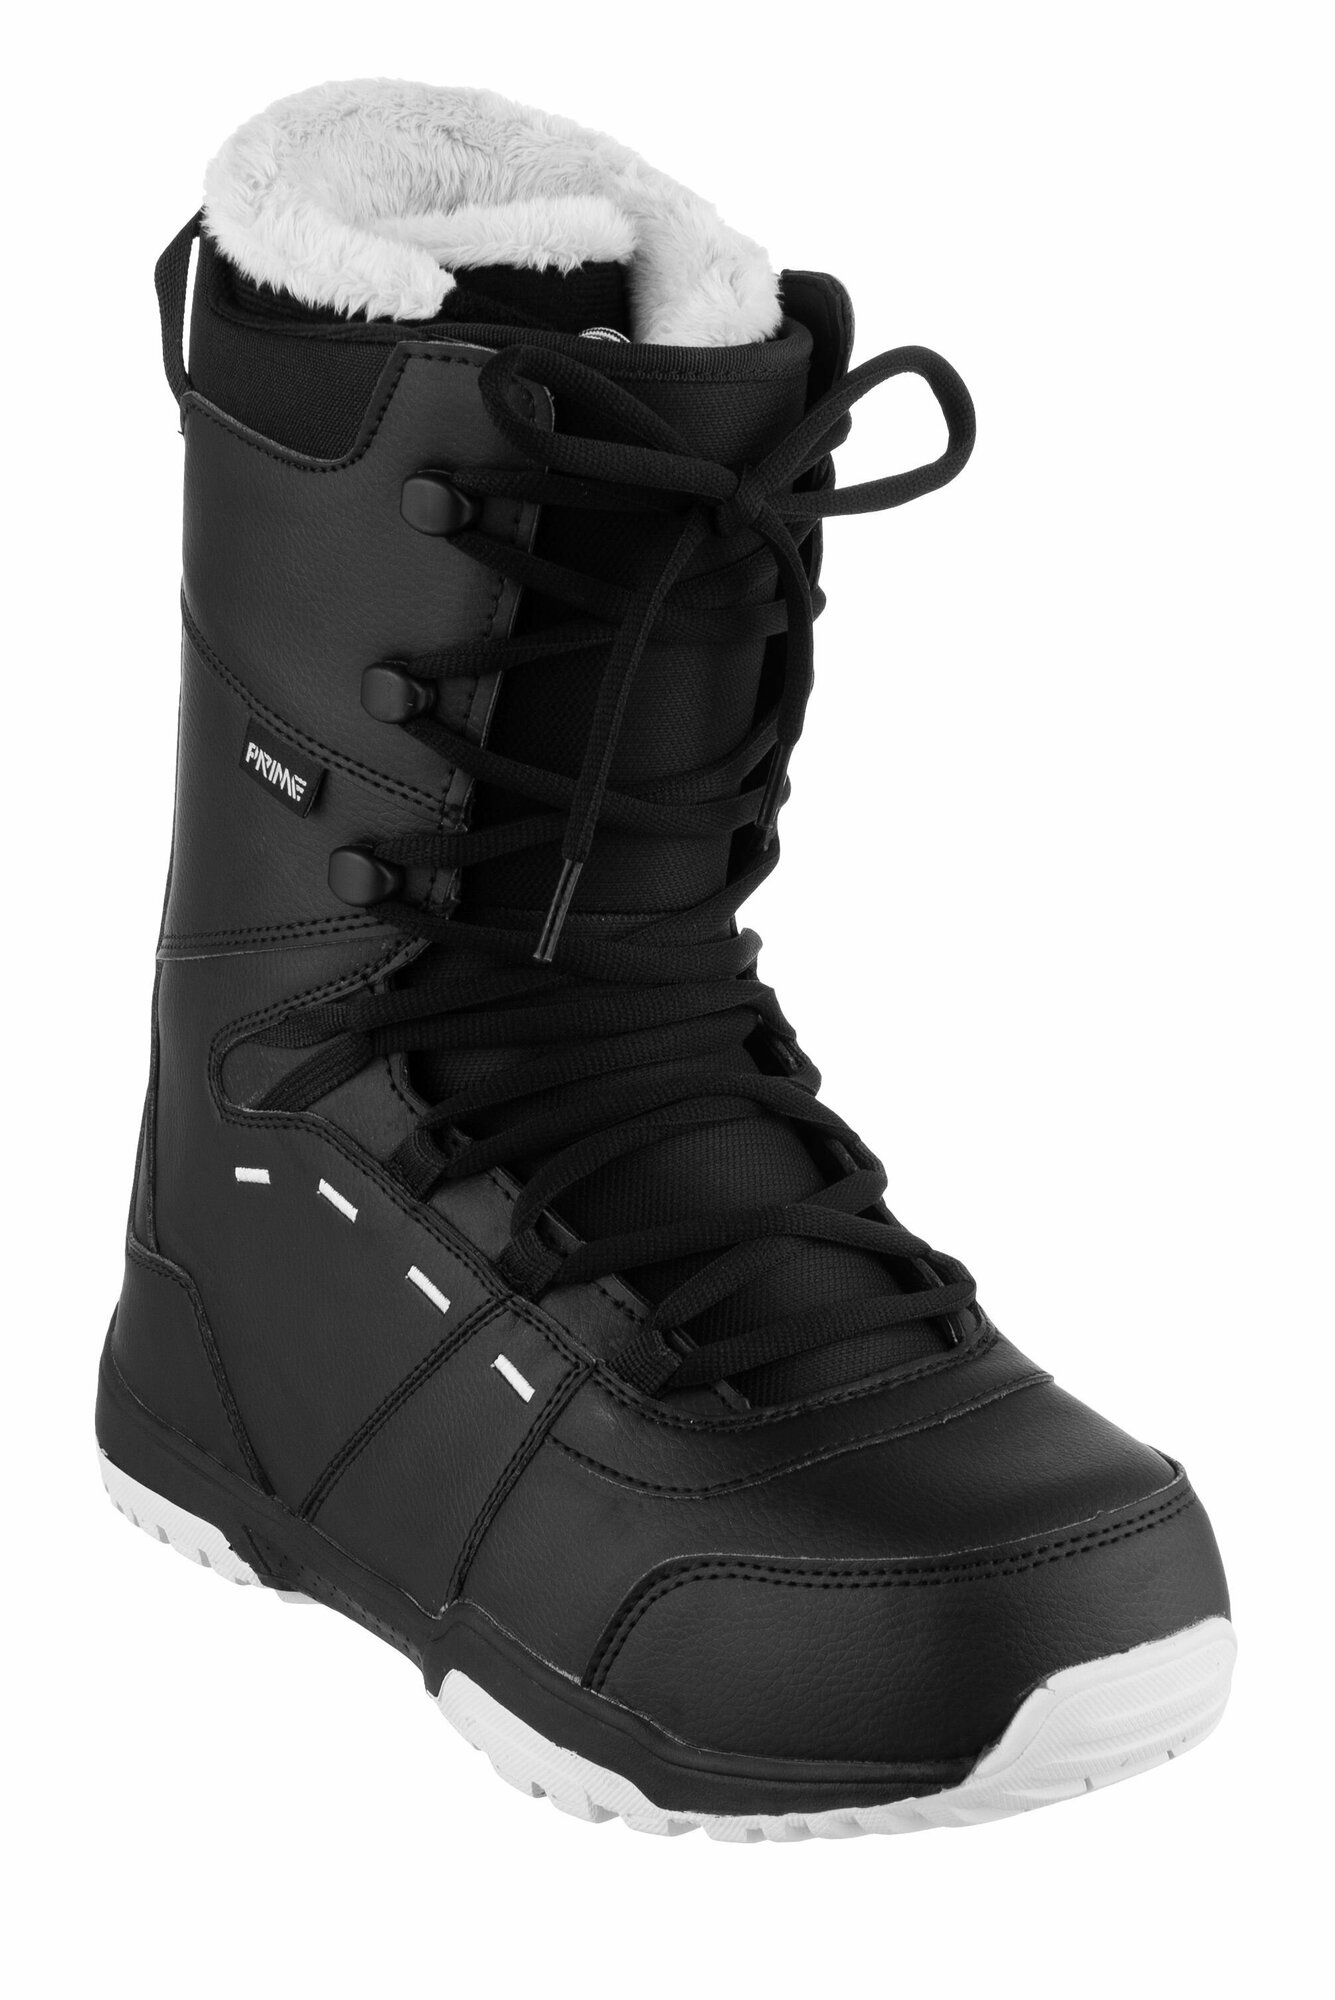 Ботинки сноубордические PRIME FUN-F1 Black (45 RU / 30 cm)